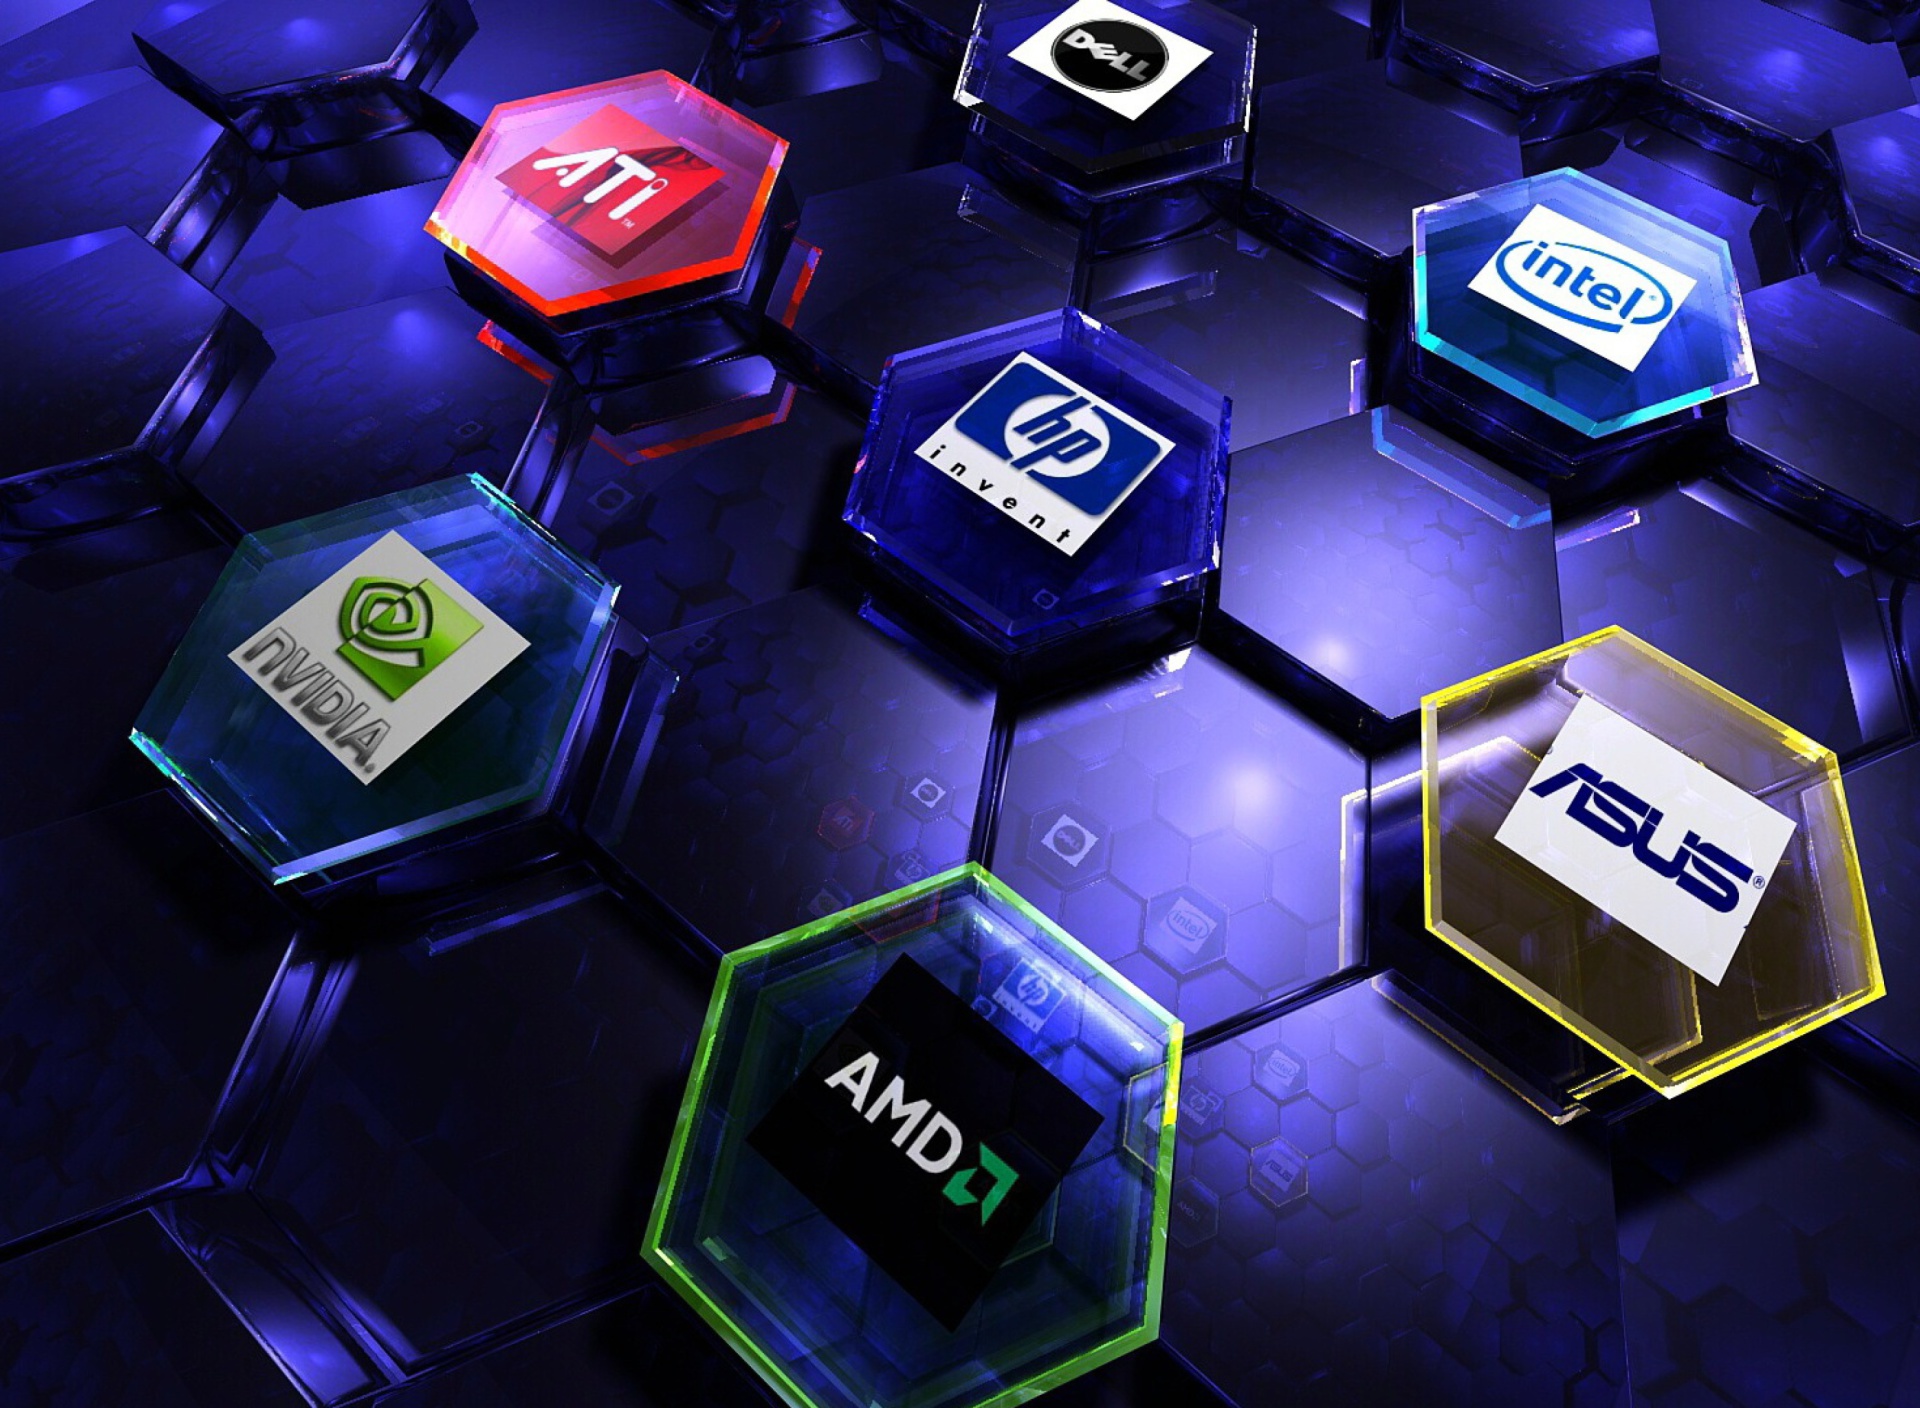 Sfondi Hi-Tech Logos: AMD, HP, Ati, Nvidia, Asus 1920x1408